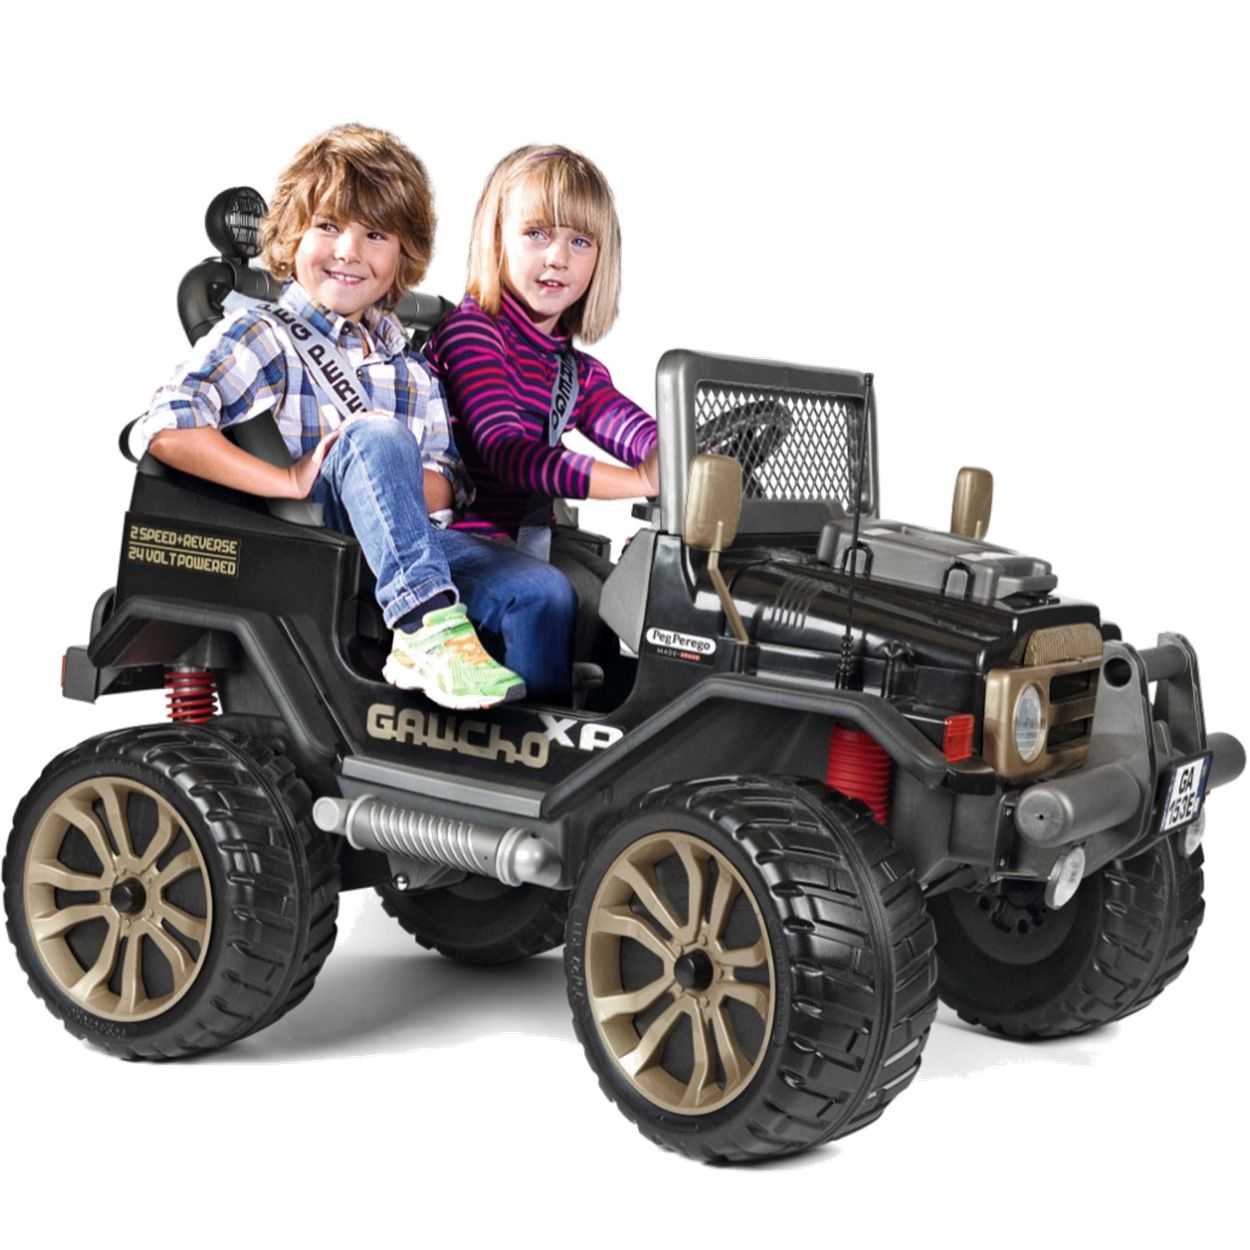 Estes minicarros para crianças são tão equipados quanto carros de verdade